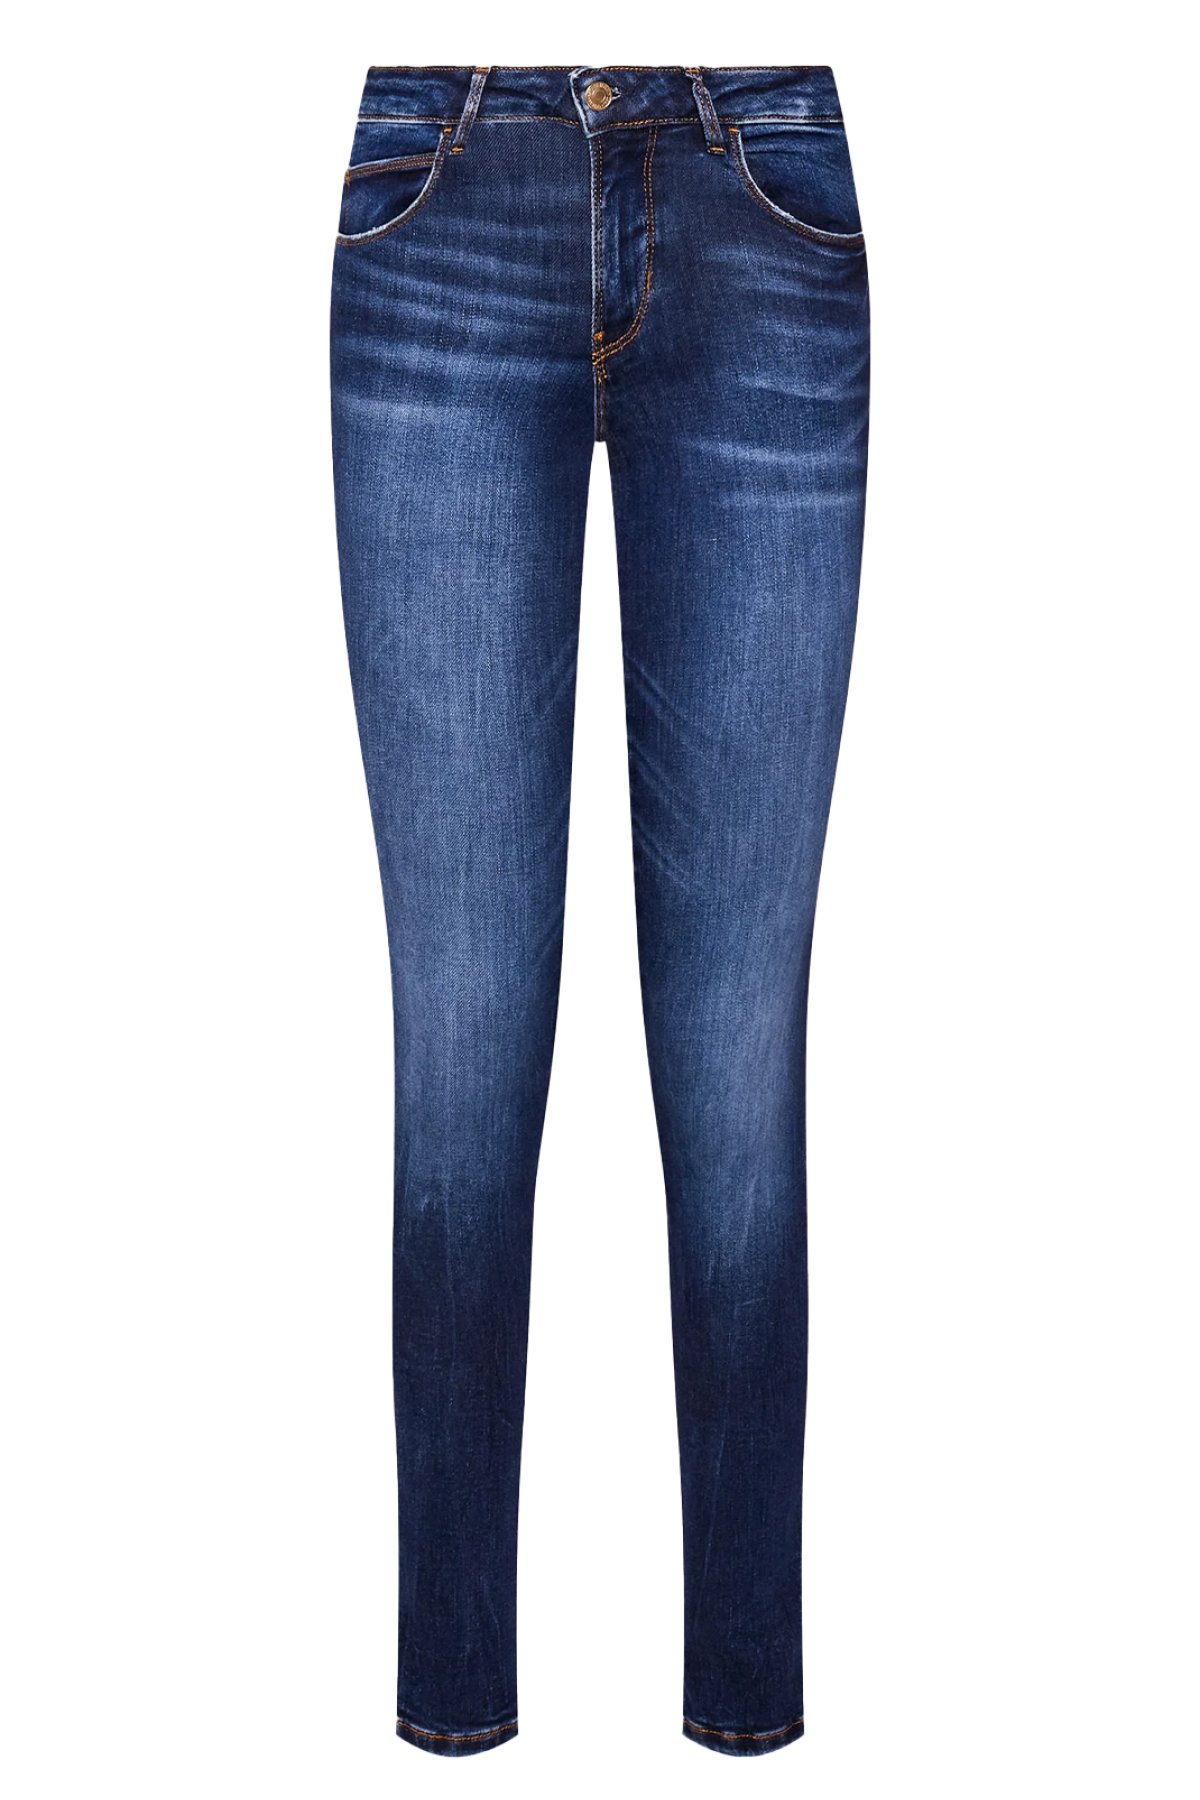 Guess Jeans W2YAJ2 D4Q03 džíny modré